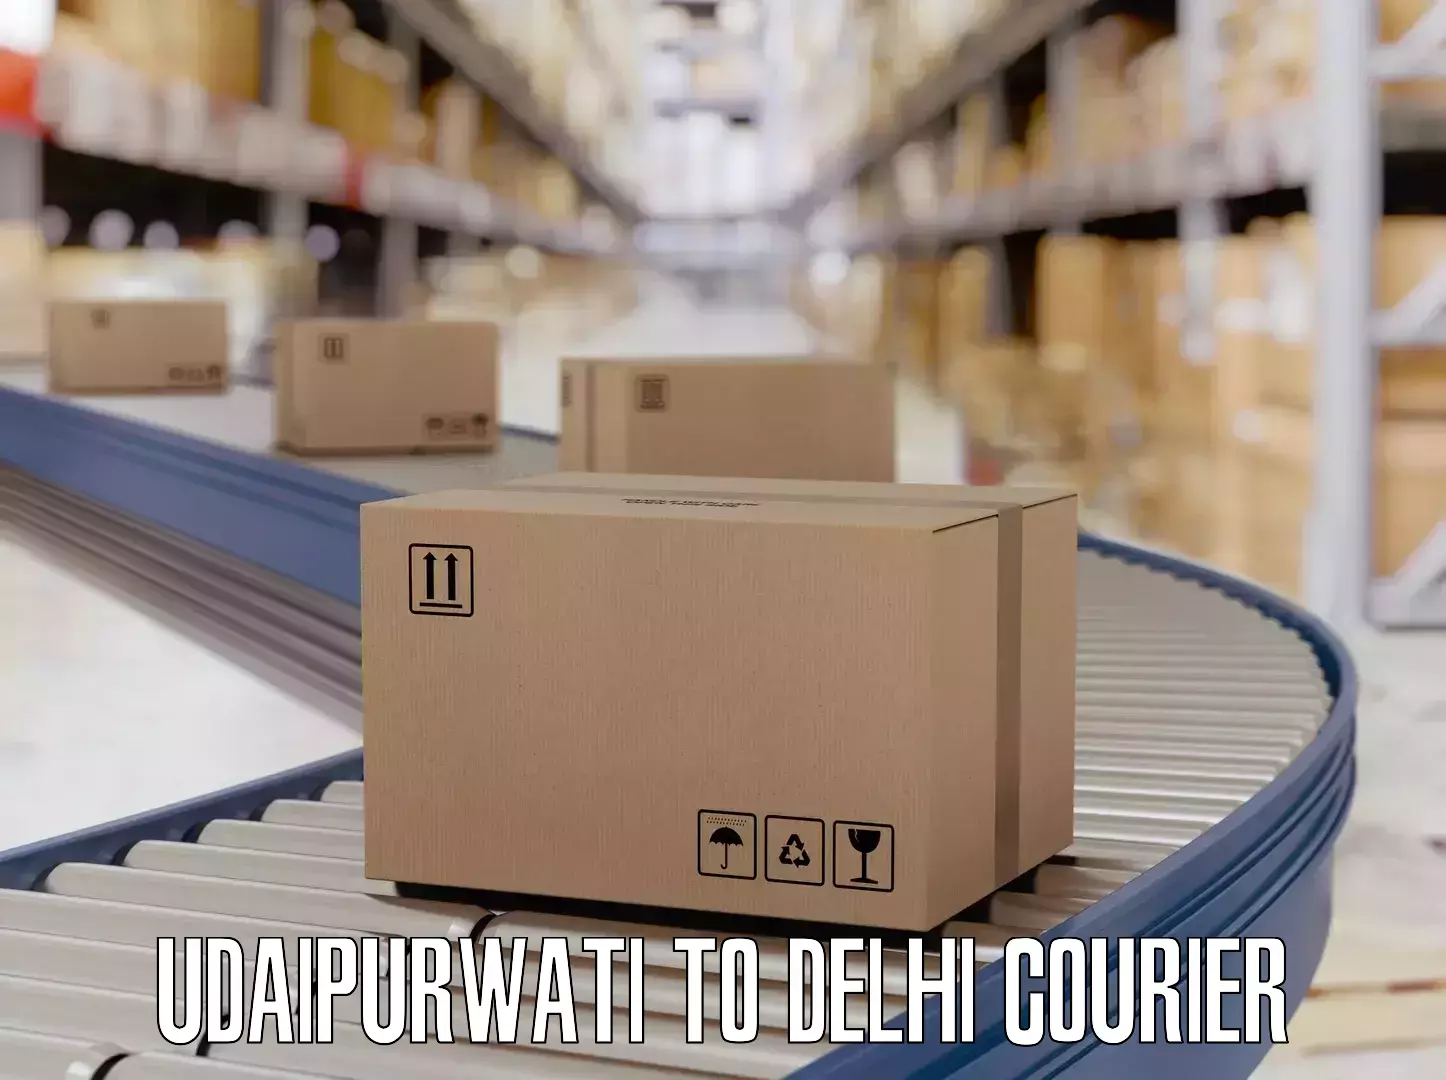 Luggage delivery estimate in Udaipurwati to Jamia Millia Islamia New Delhi